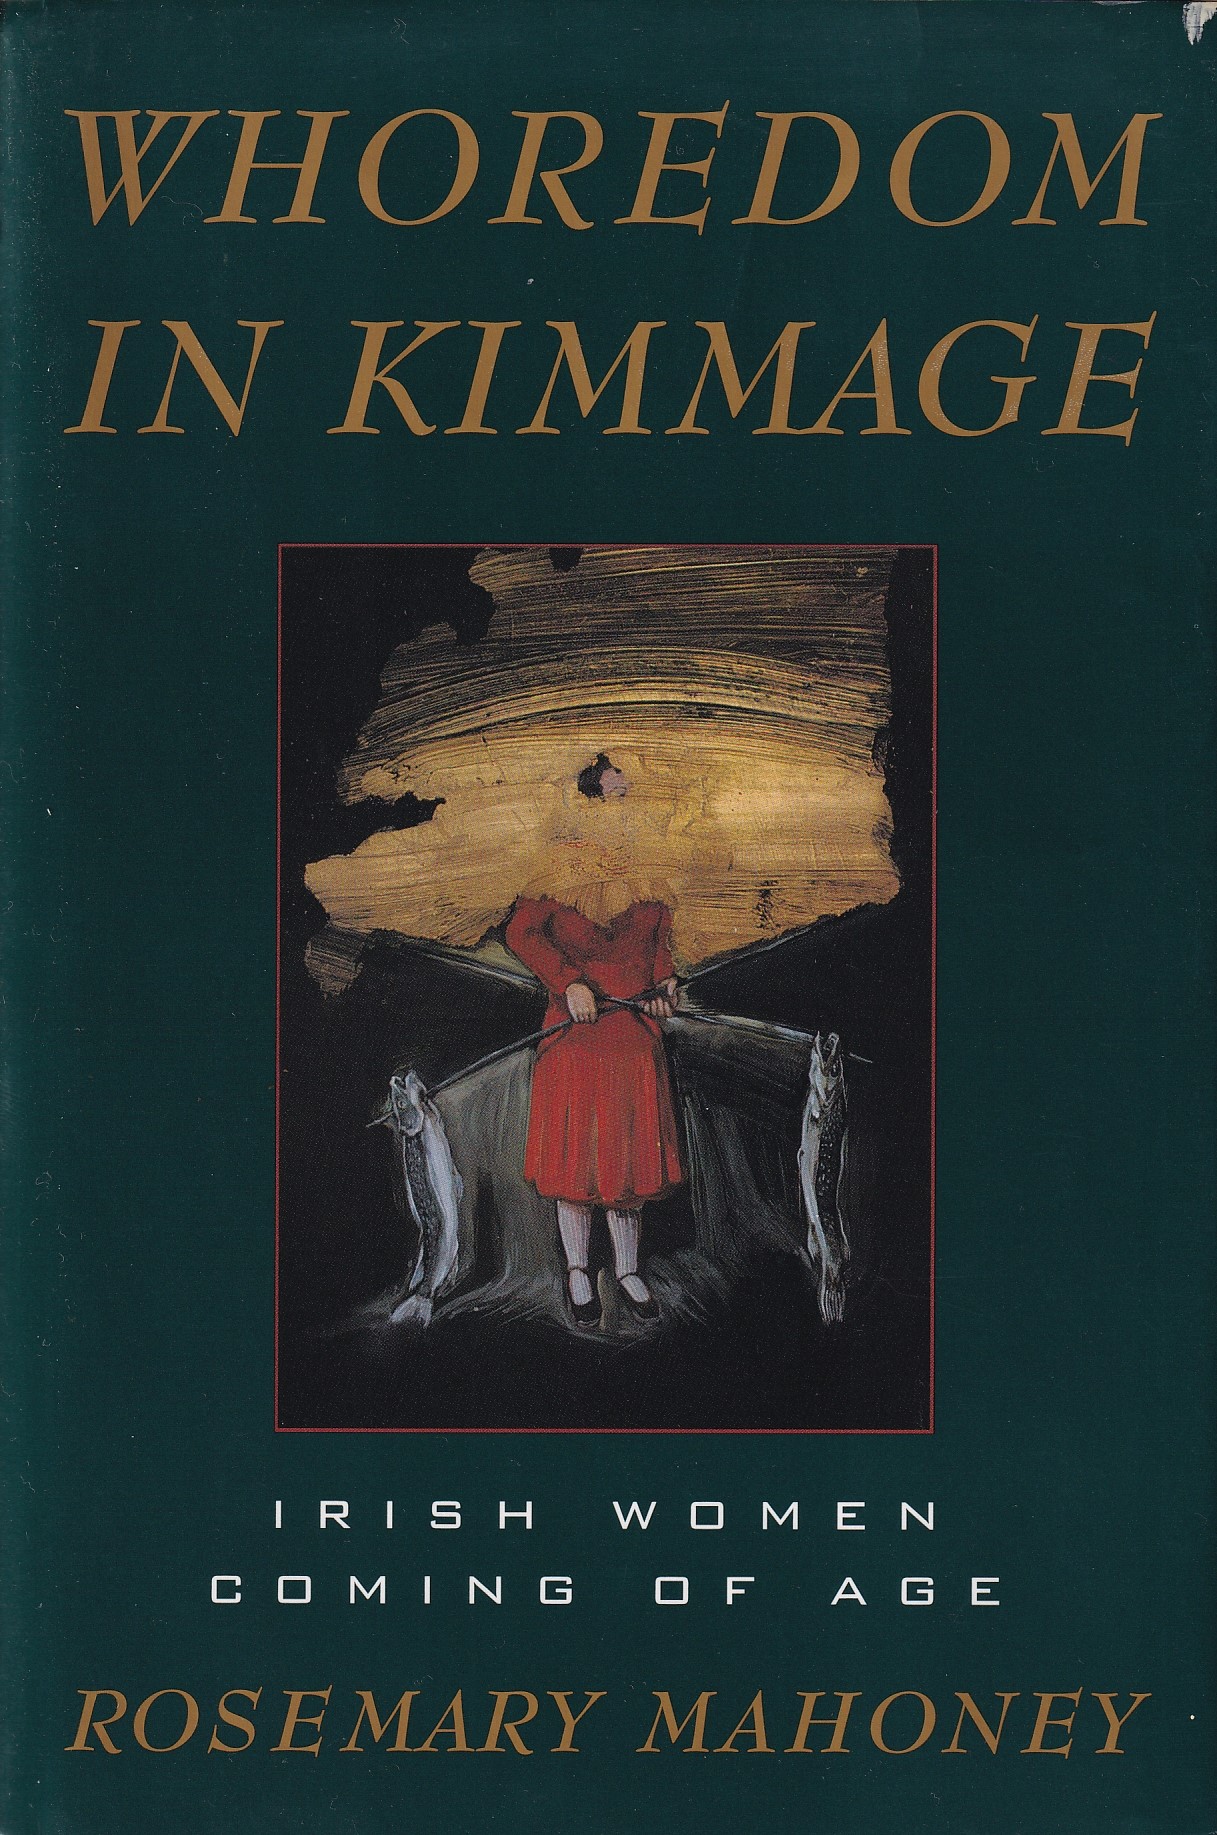 Whoredom in Kimmage: Irish Women Coming of Age by Rosemary Mahoney